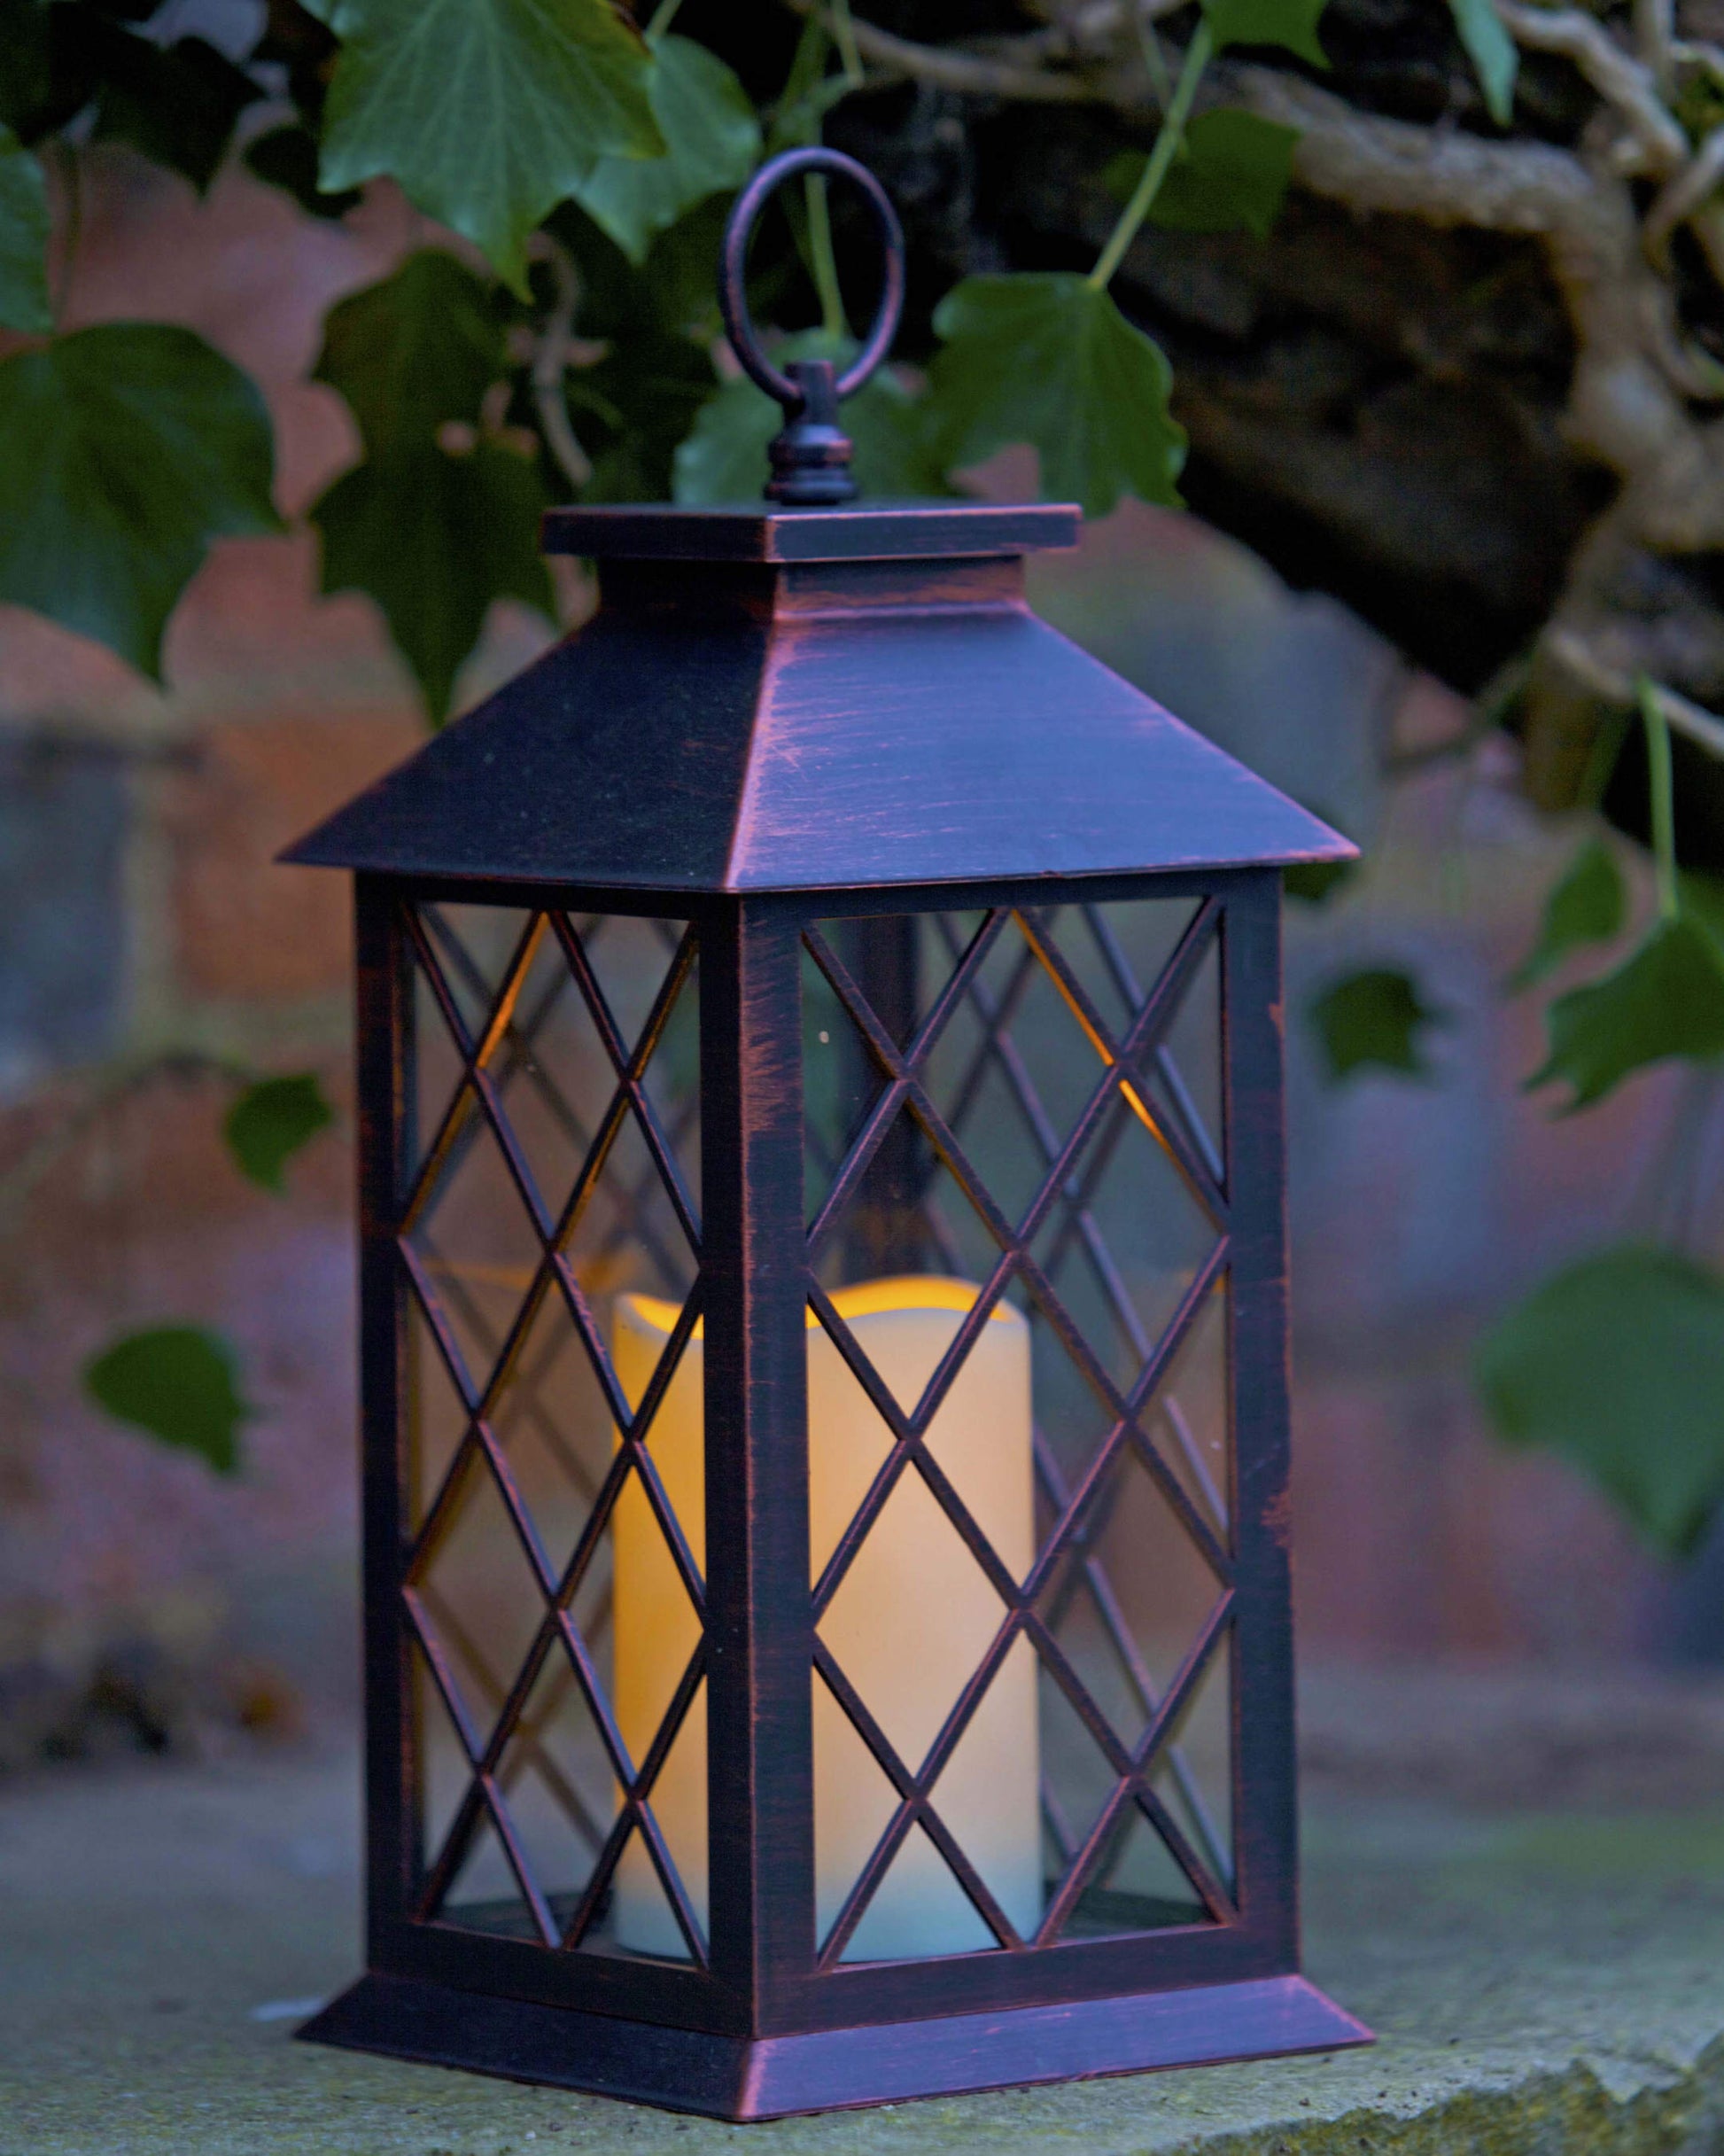 Lattice tradičný lampáš na terasu s LED sviečkou v záhrade od Outside In designs